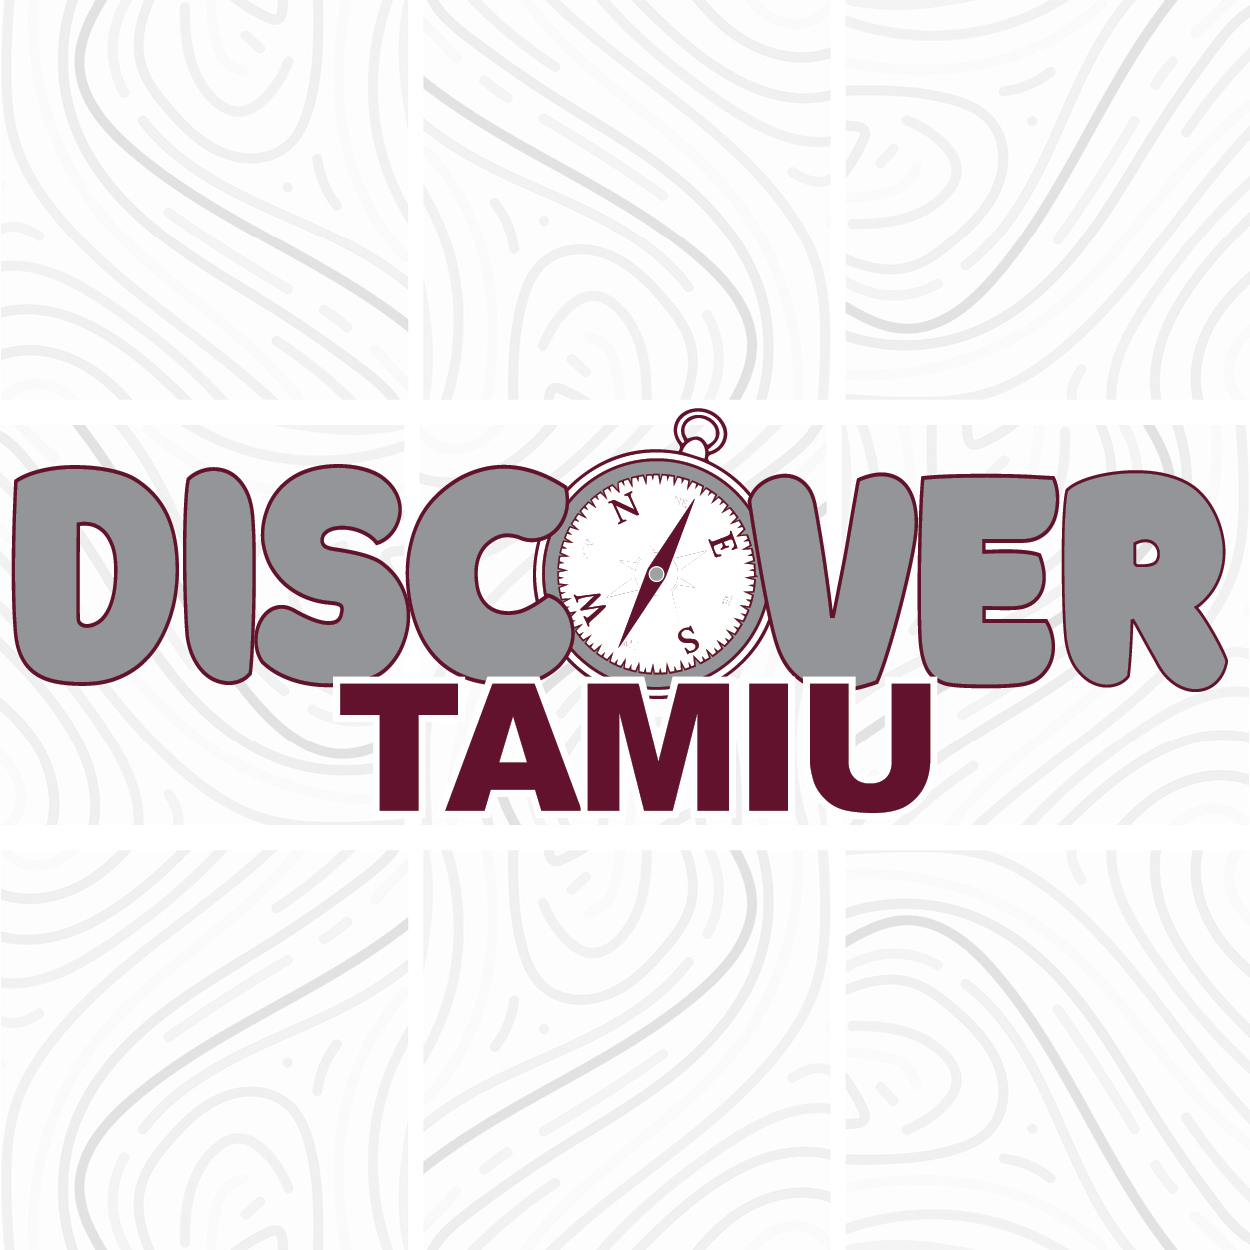 Discover TAMIU Logo